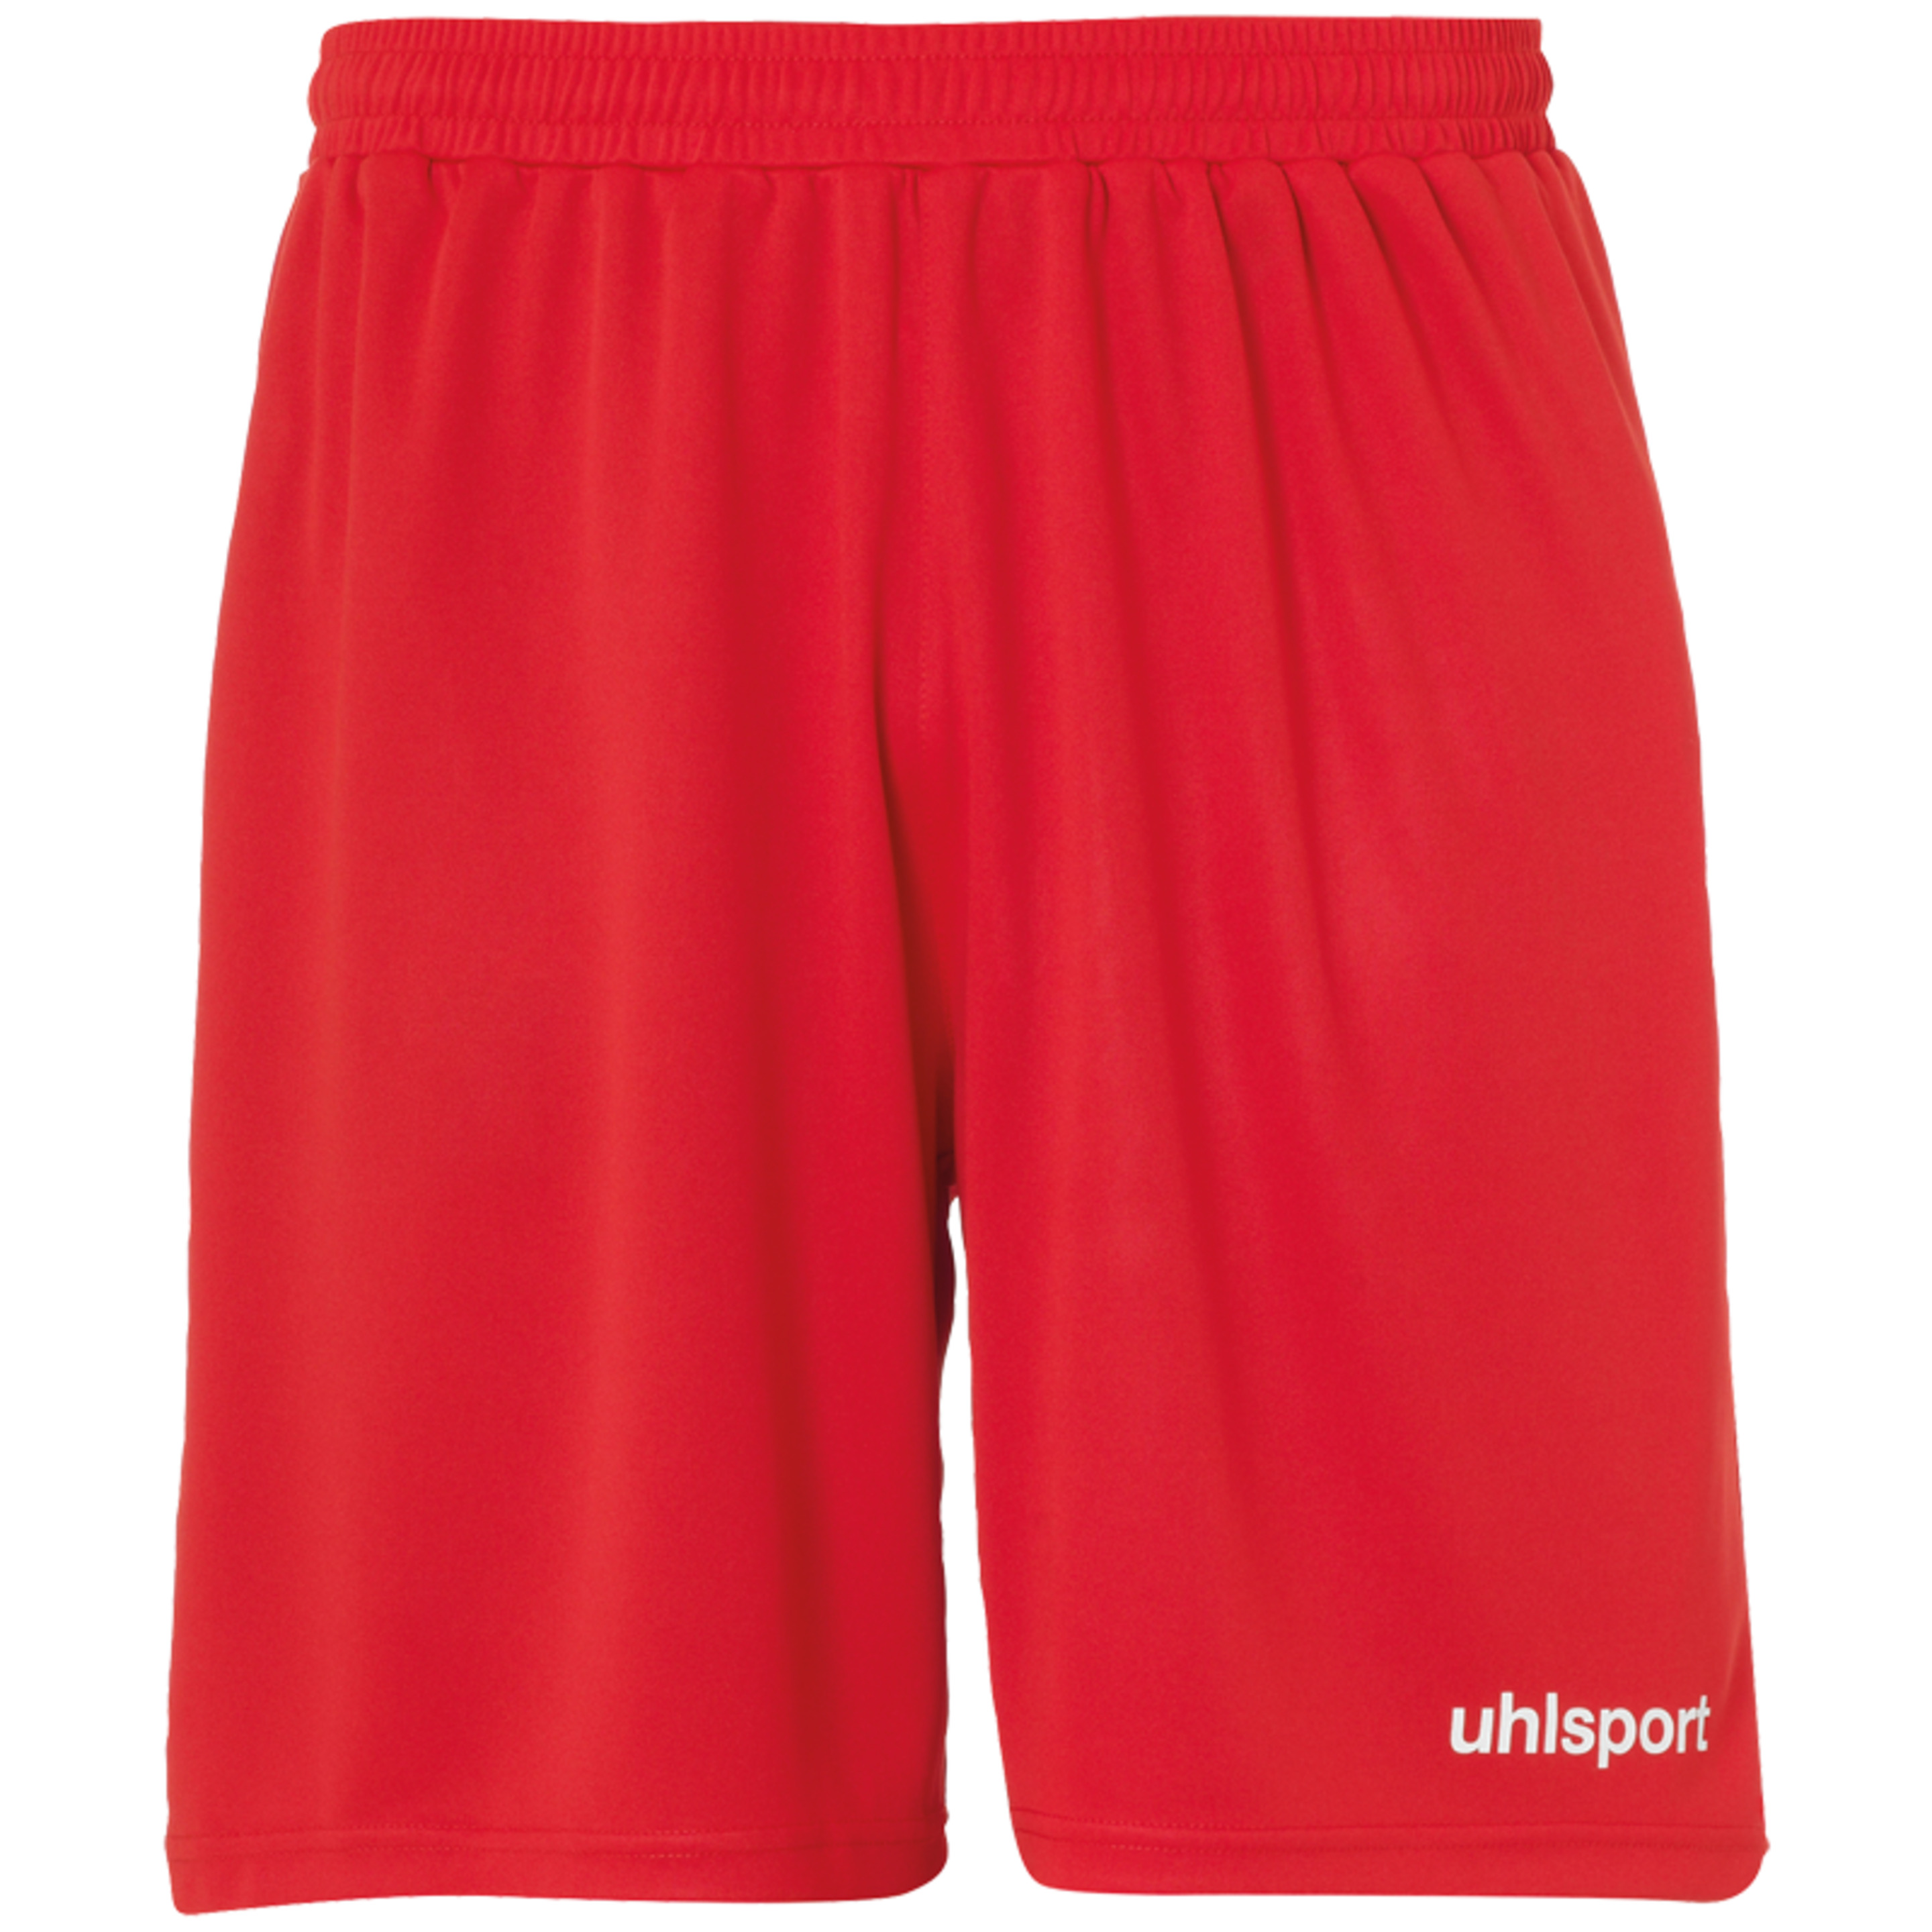 Center Basic Shorts Without Slip Red Uhlsport - rojo - 